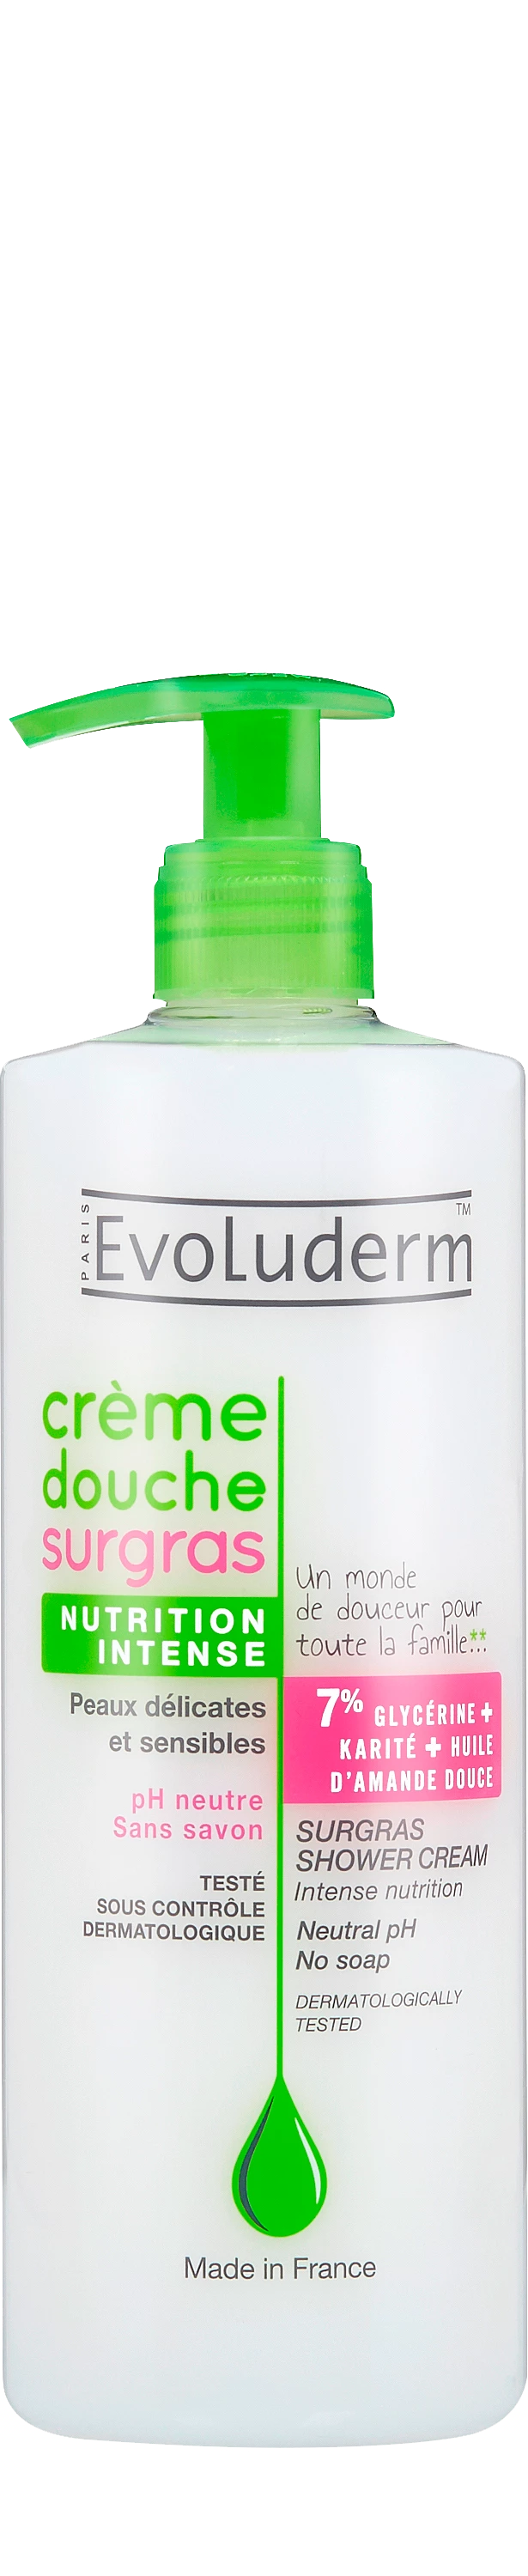 Crème de Douche Surgas, 500ml - EVOLUDERM